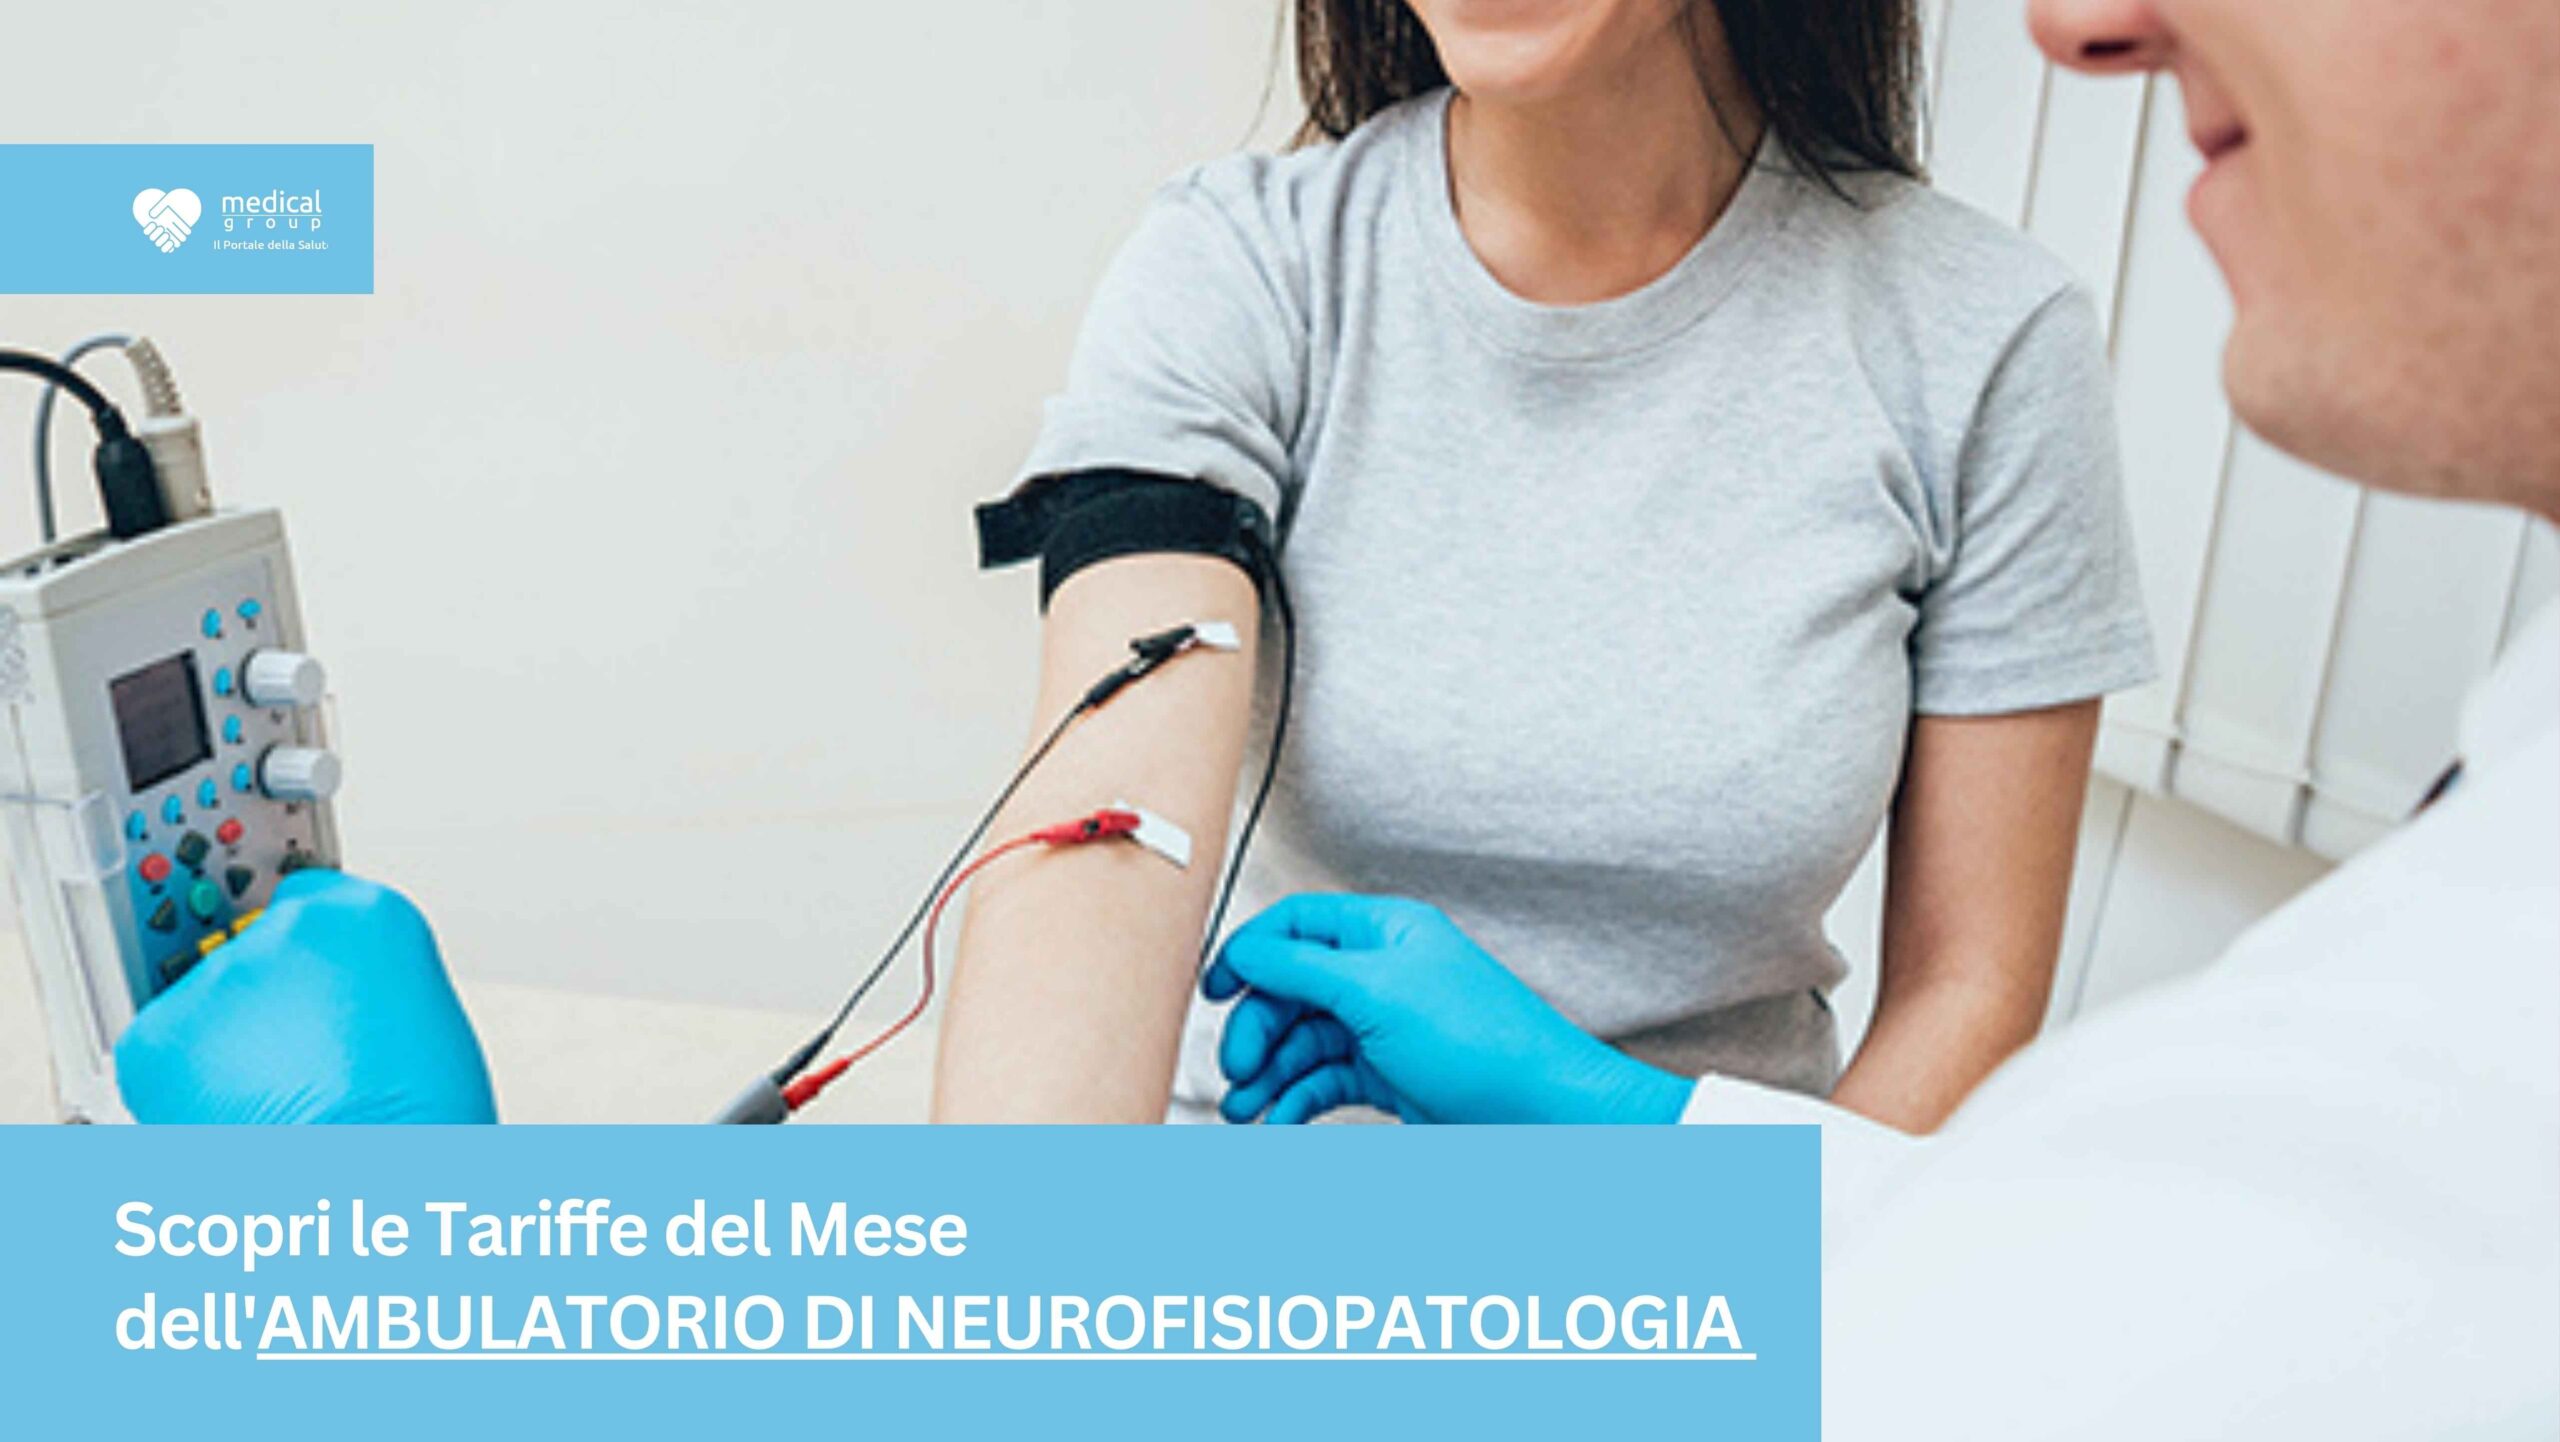 Tariffe del Mese Poliambulatorio Neurofisiopatologia F-Medical Frosinone